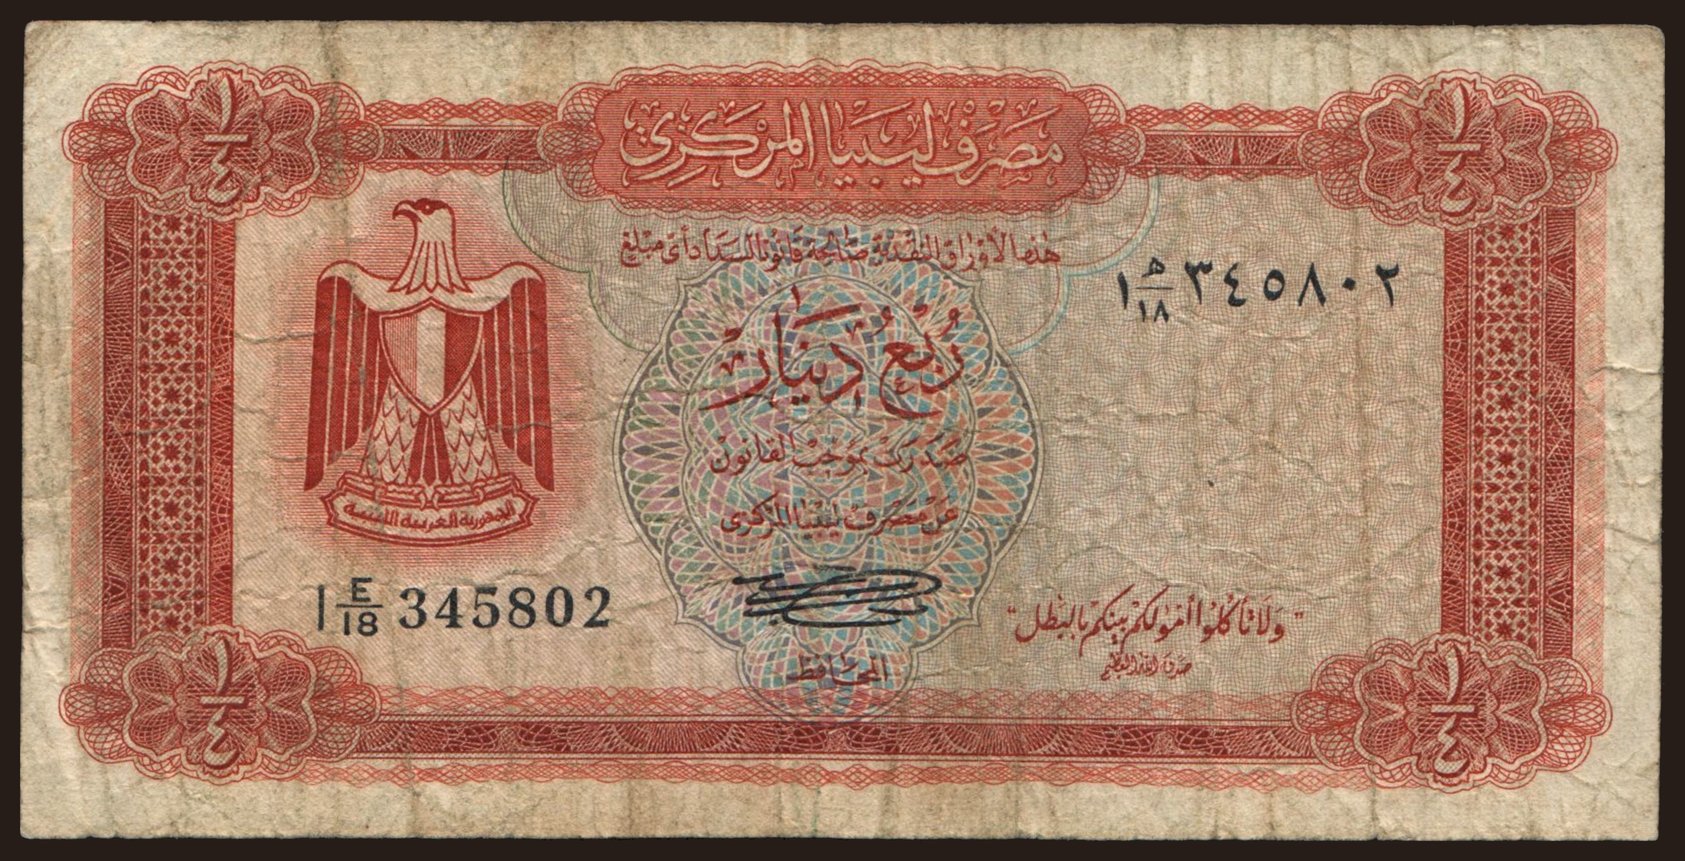 1/4 dinar, 1972